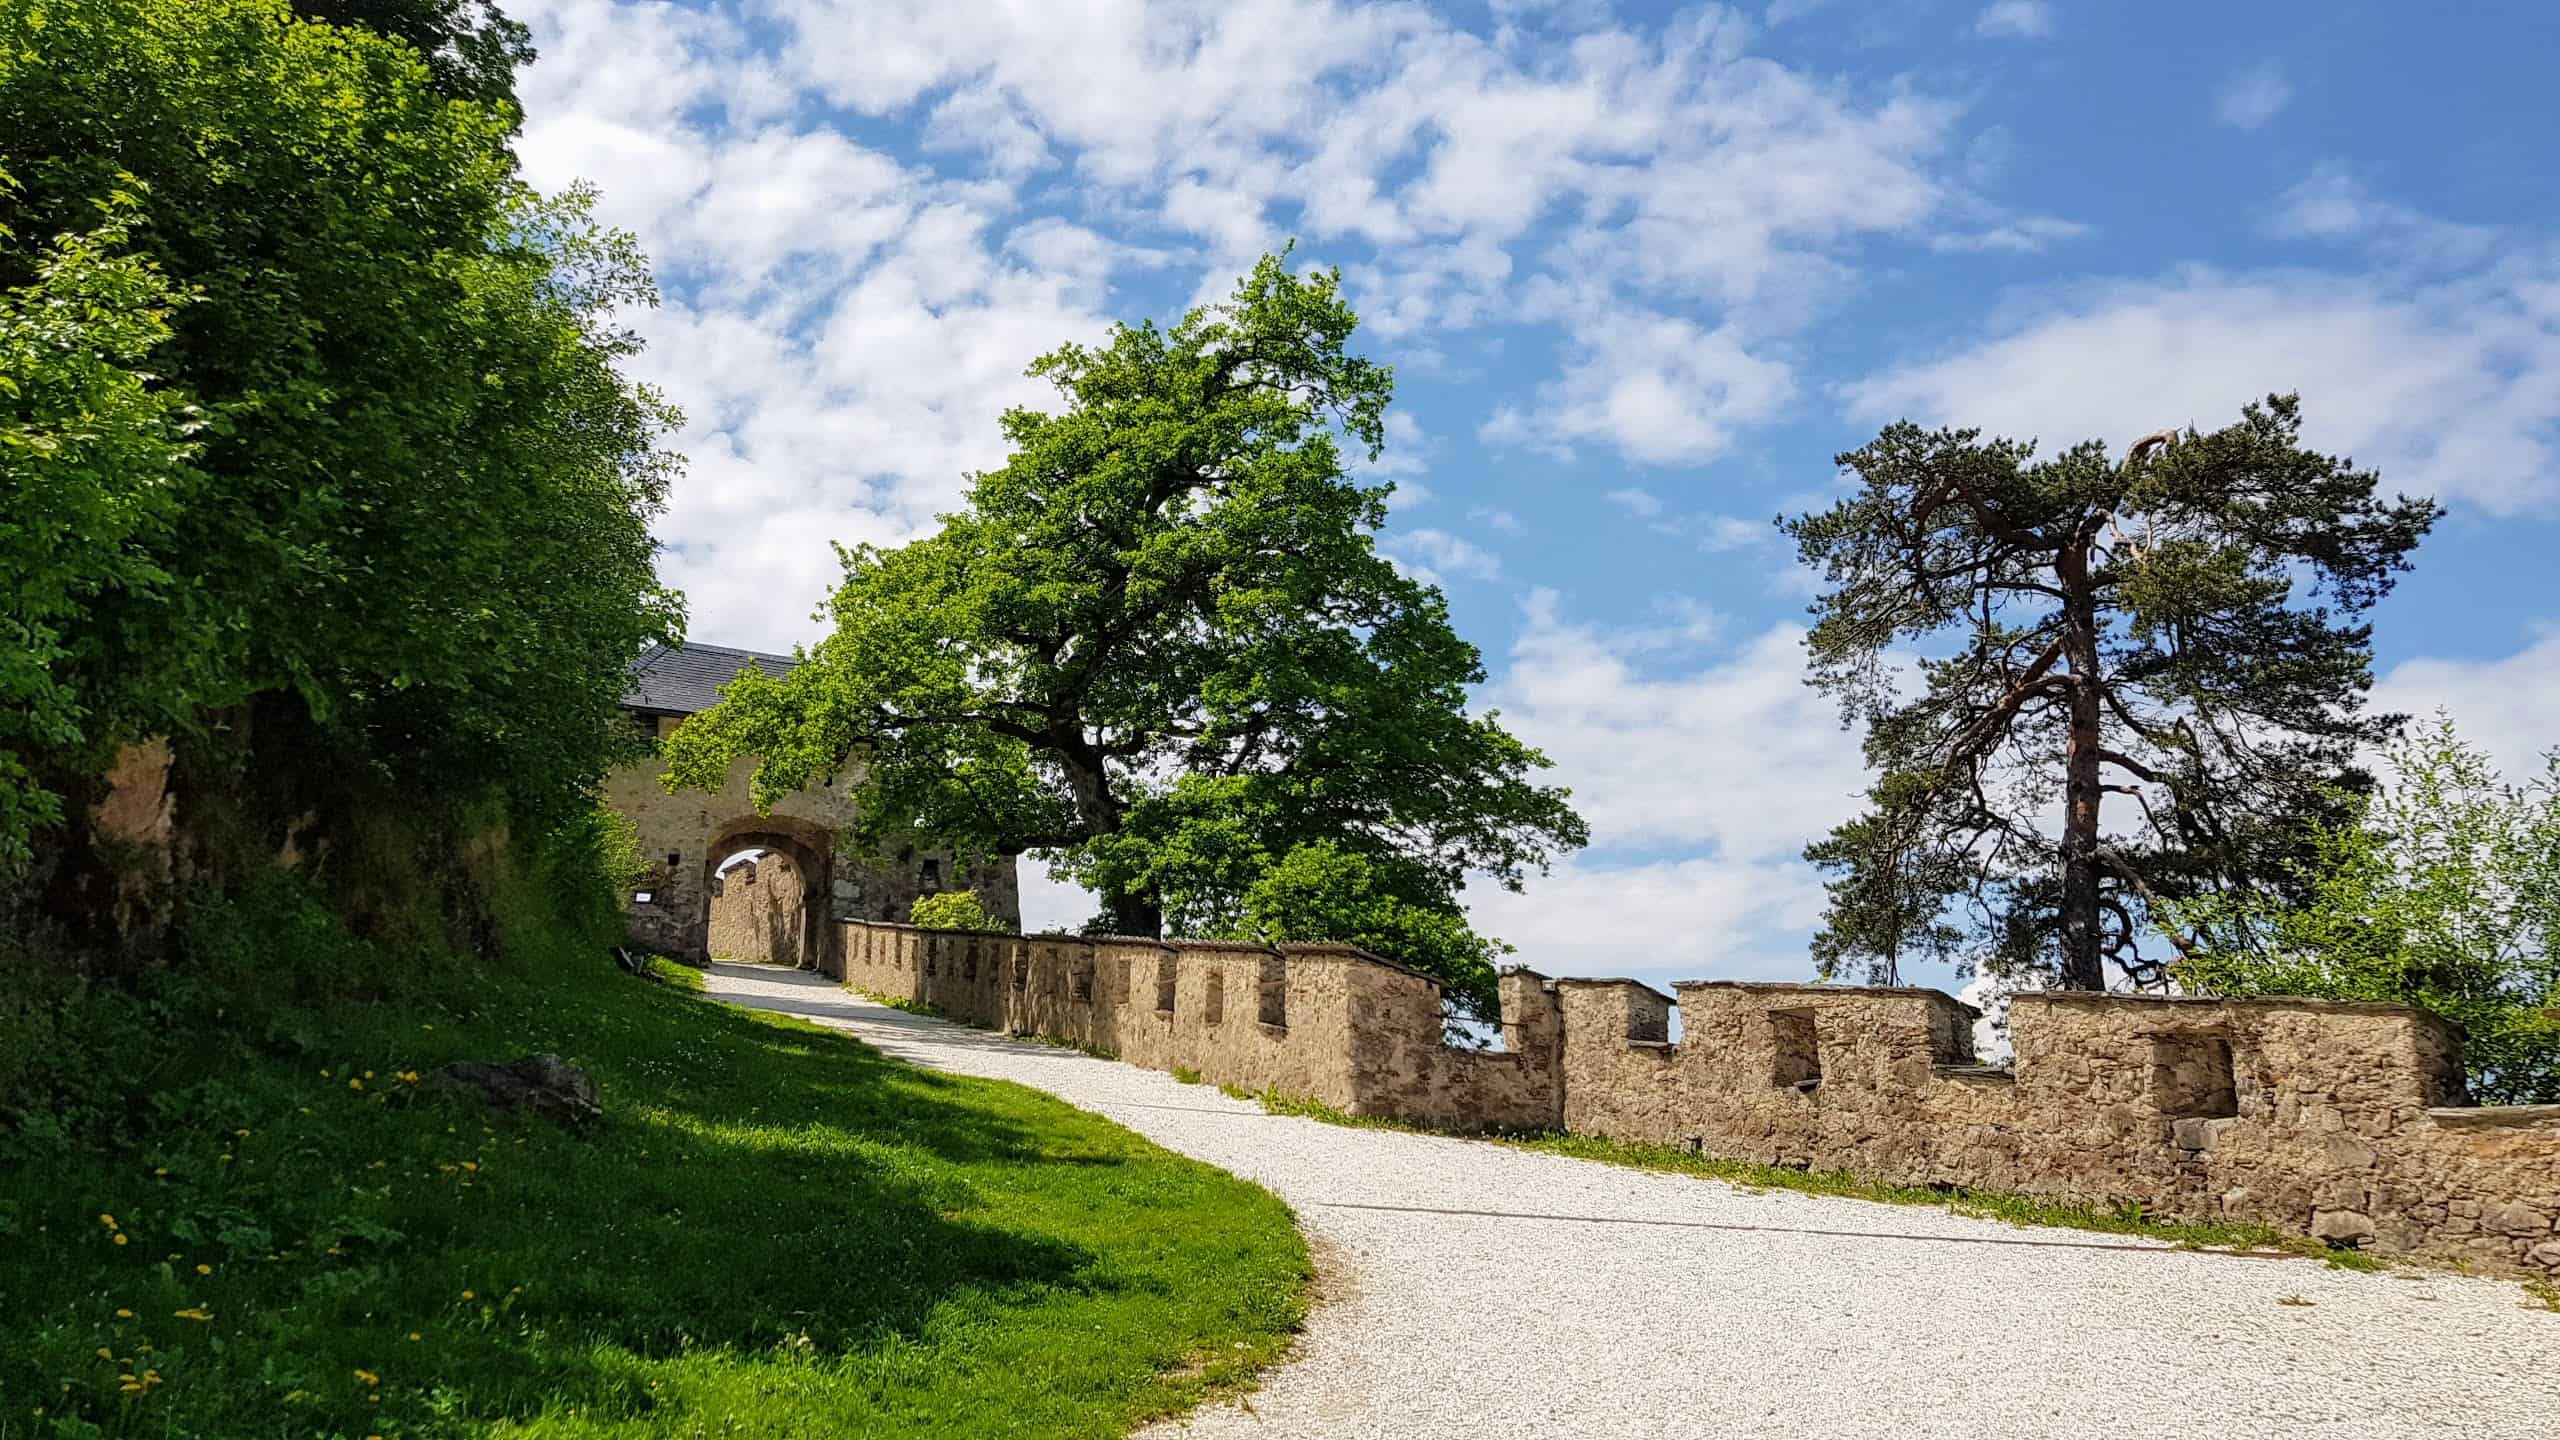 Wunderschöner Burgweg auf die Burg Hochosterwitz, eines von Kärntens TOP-10 Ausflugszielen in der Urlaubsregion Mittelkärnten